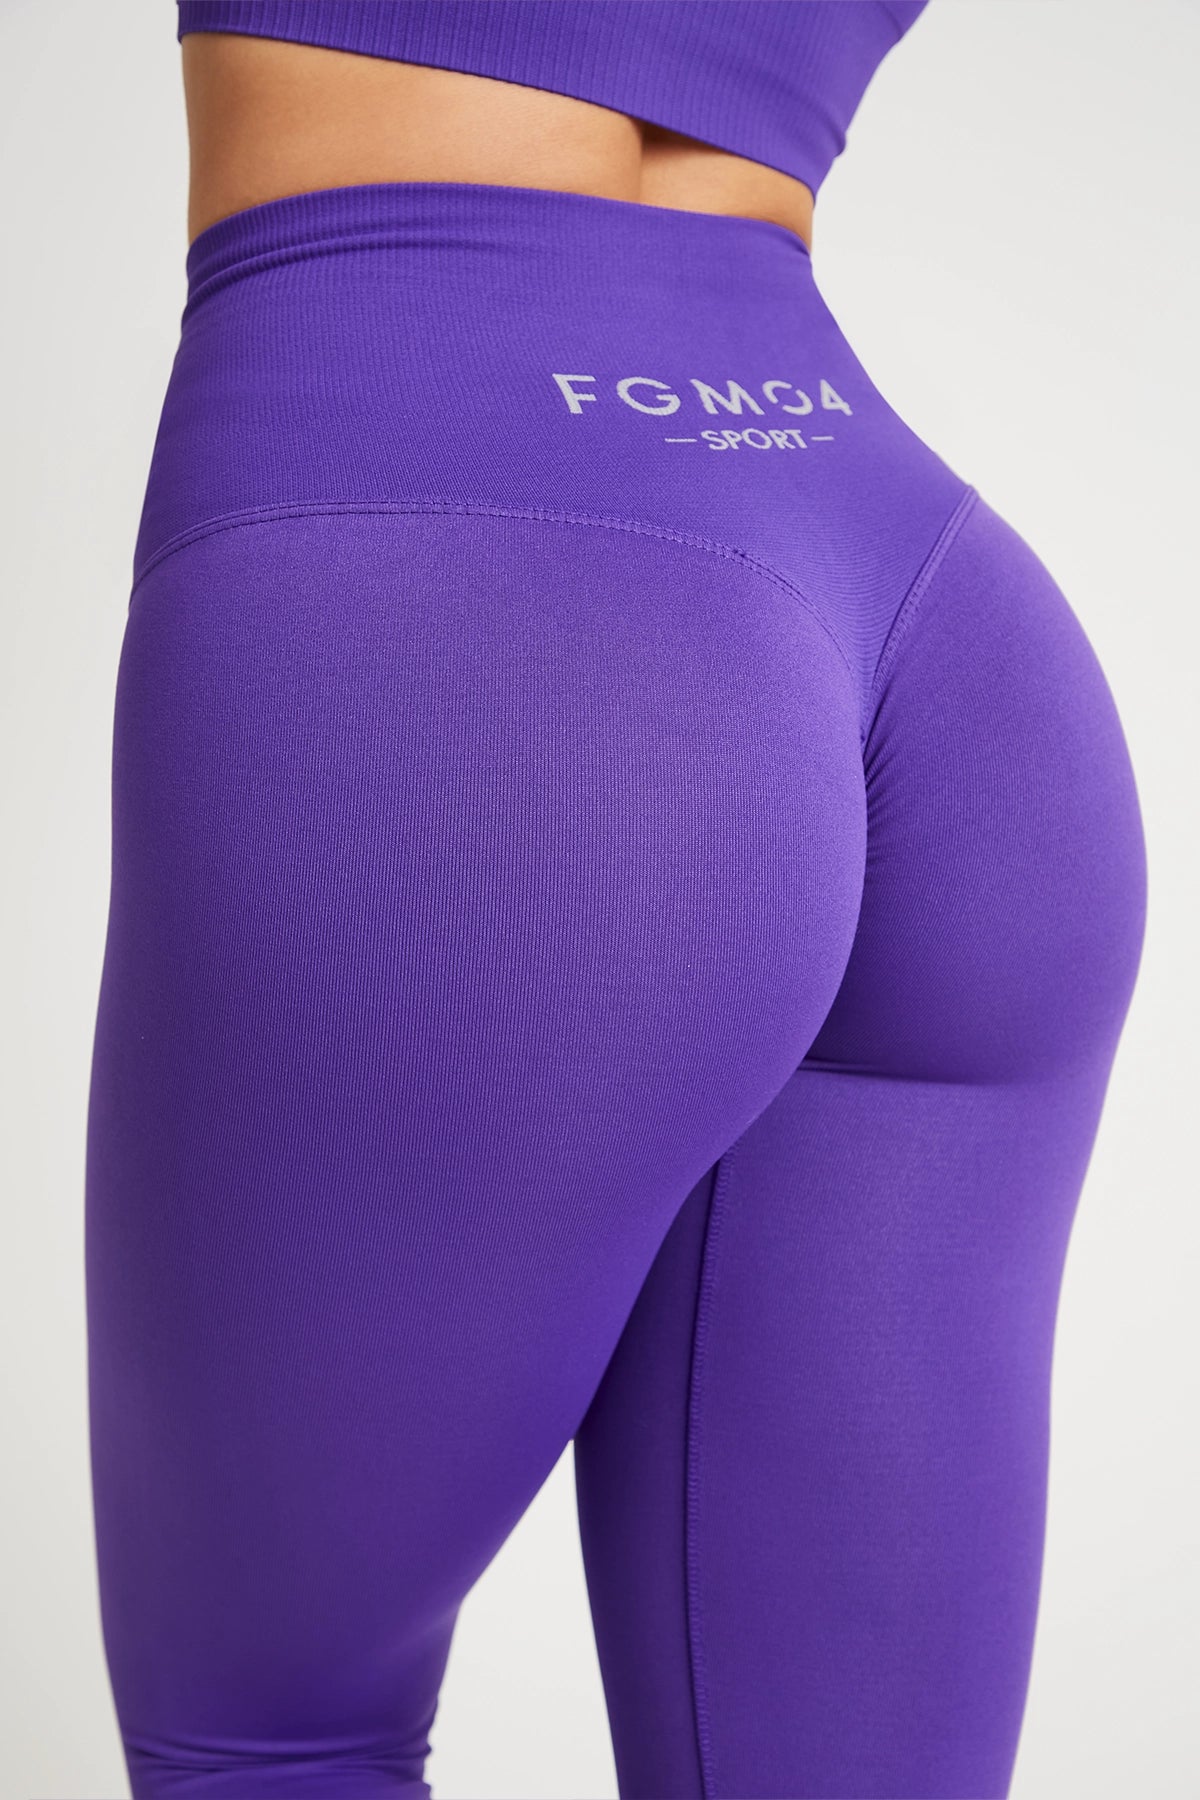 Leggings All-Up Púrpura – fgm04